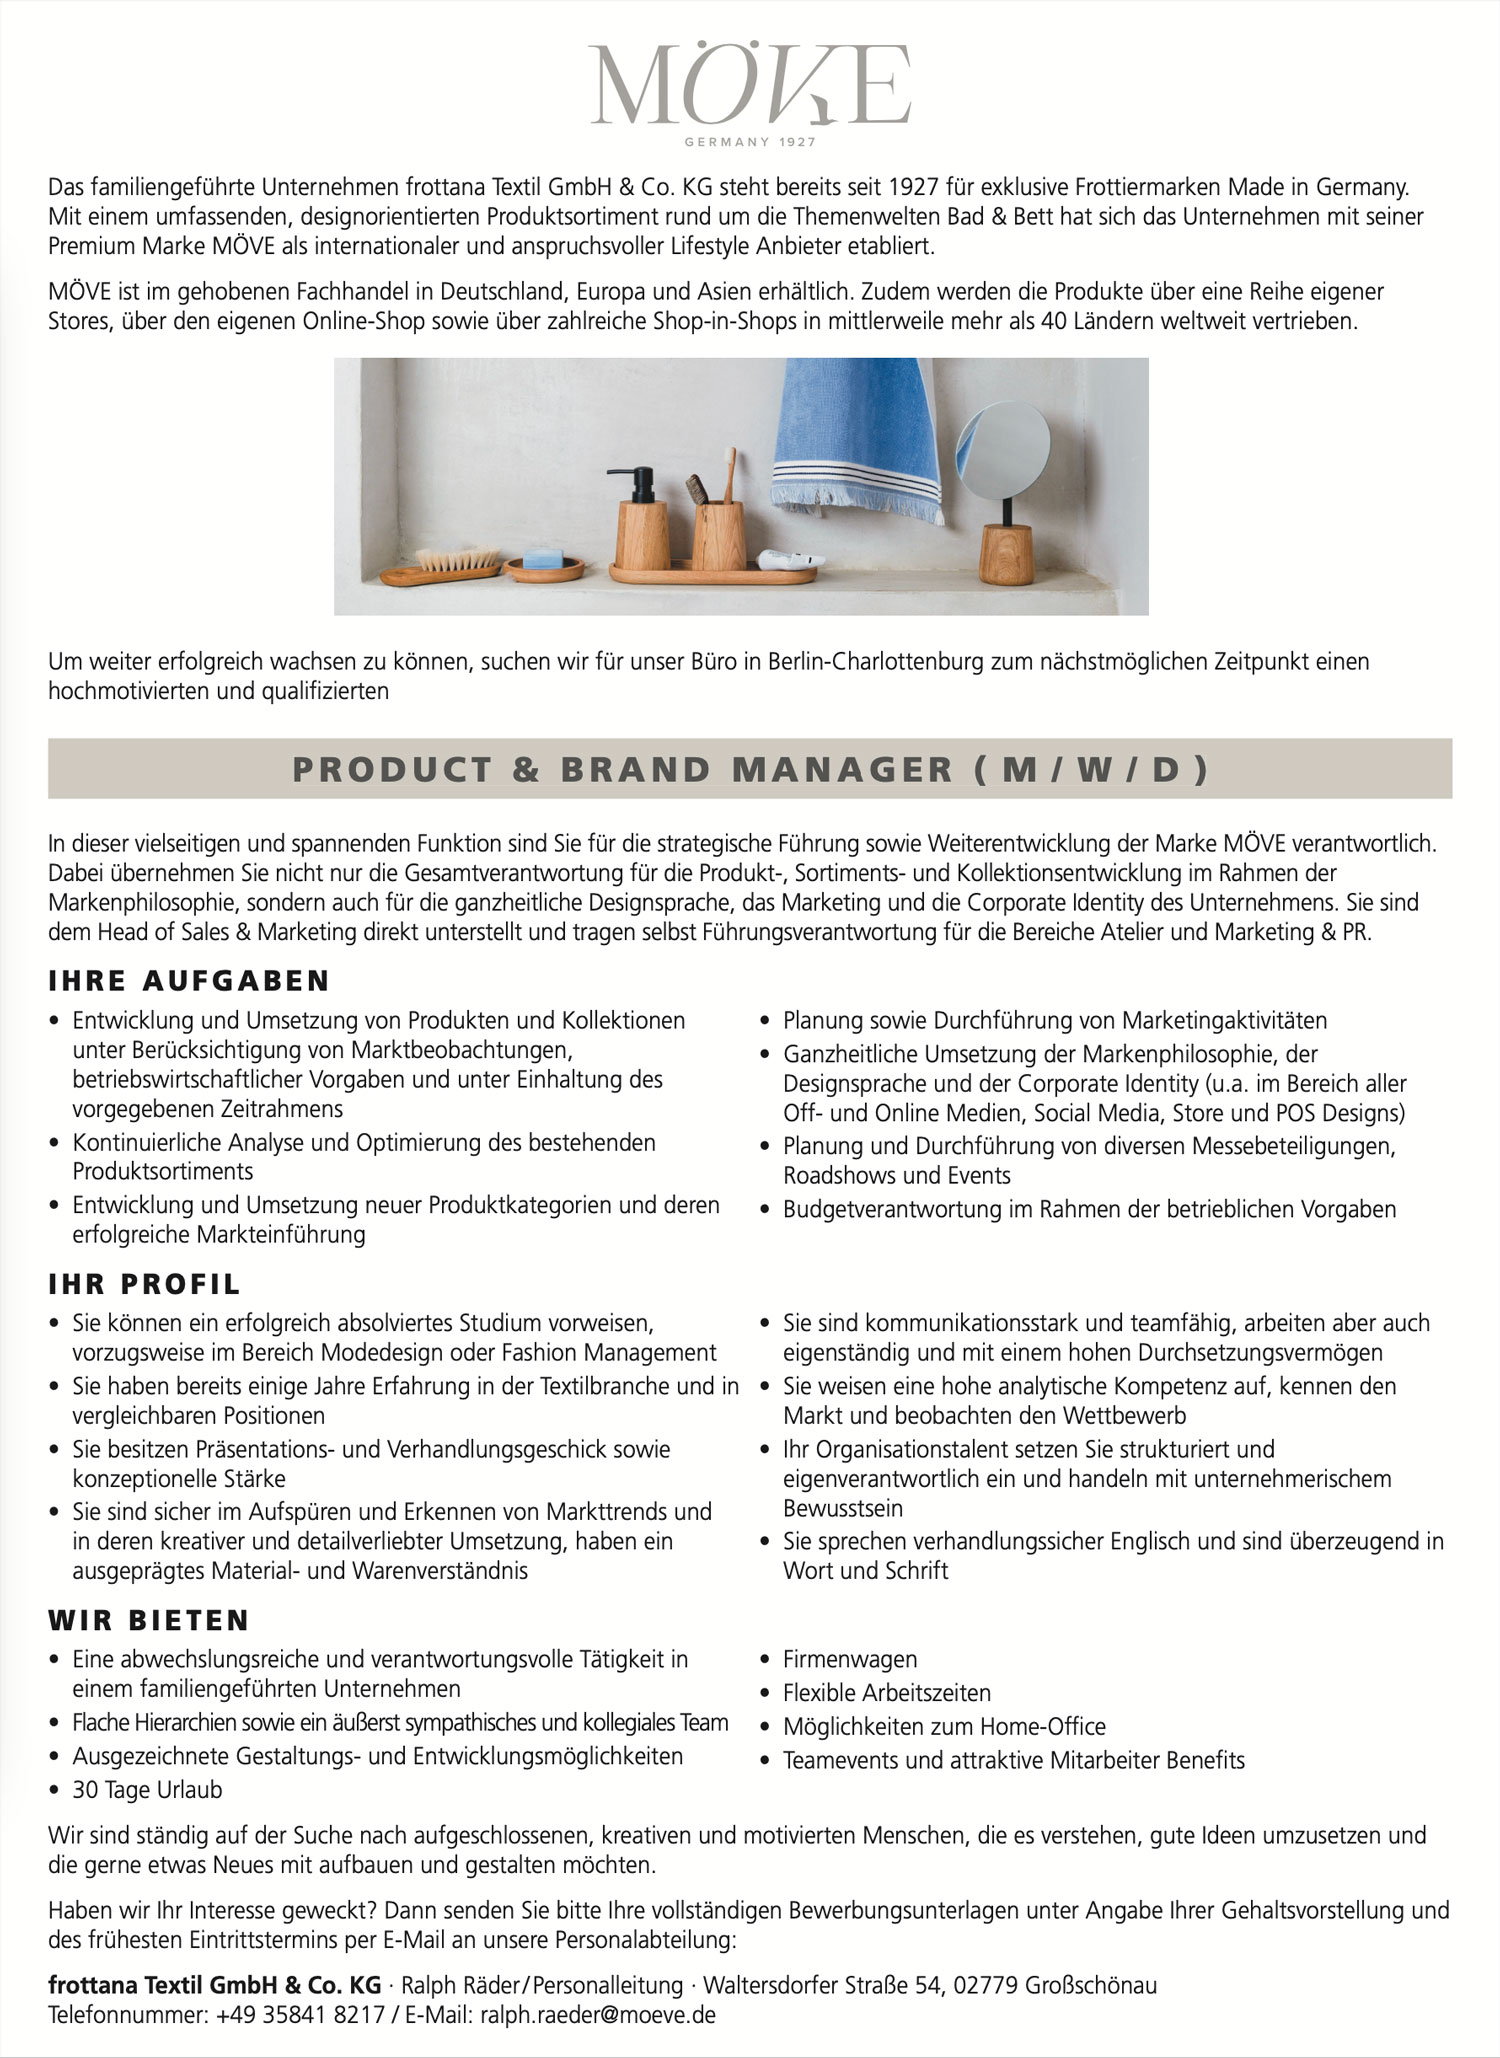 Product & Brand Manager (m/w/d) für Frottierwaren